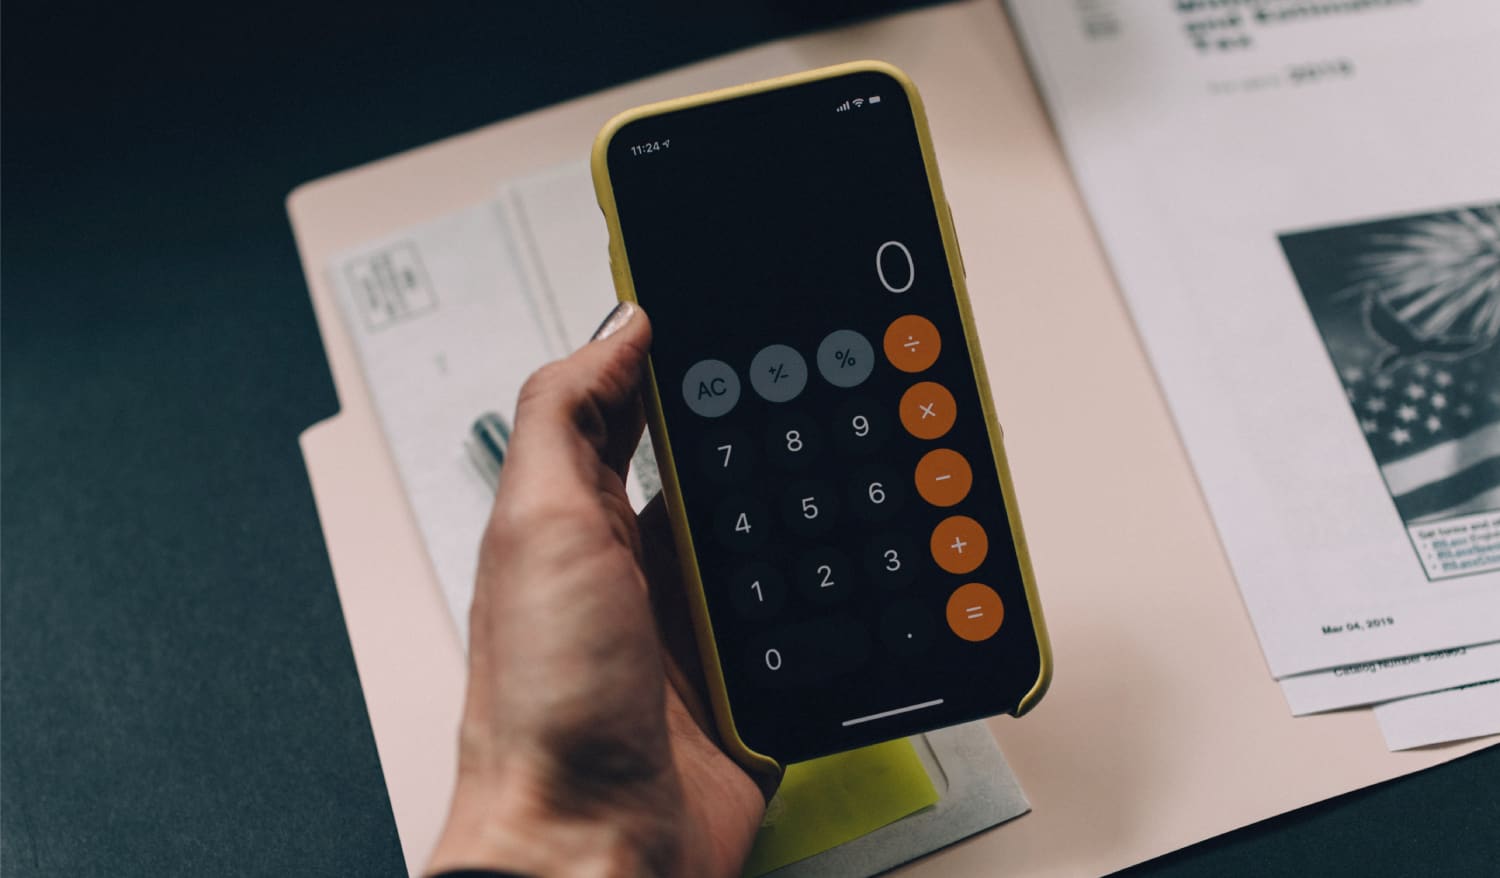 A imagem mostra uma mão segurando um celular com aplicativo de calculadora aberto. A mão está apoiada em uma mesa com outros papéis.